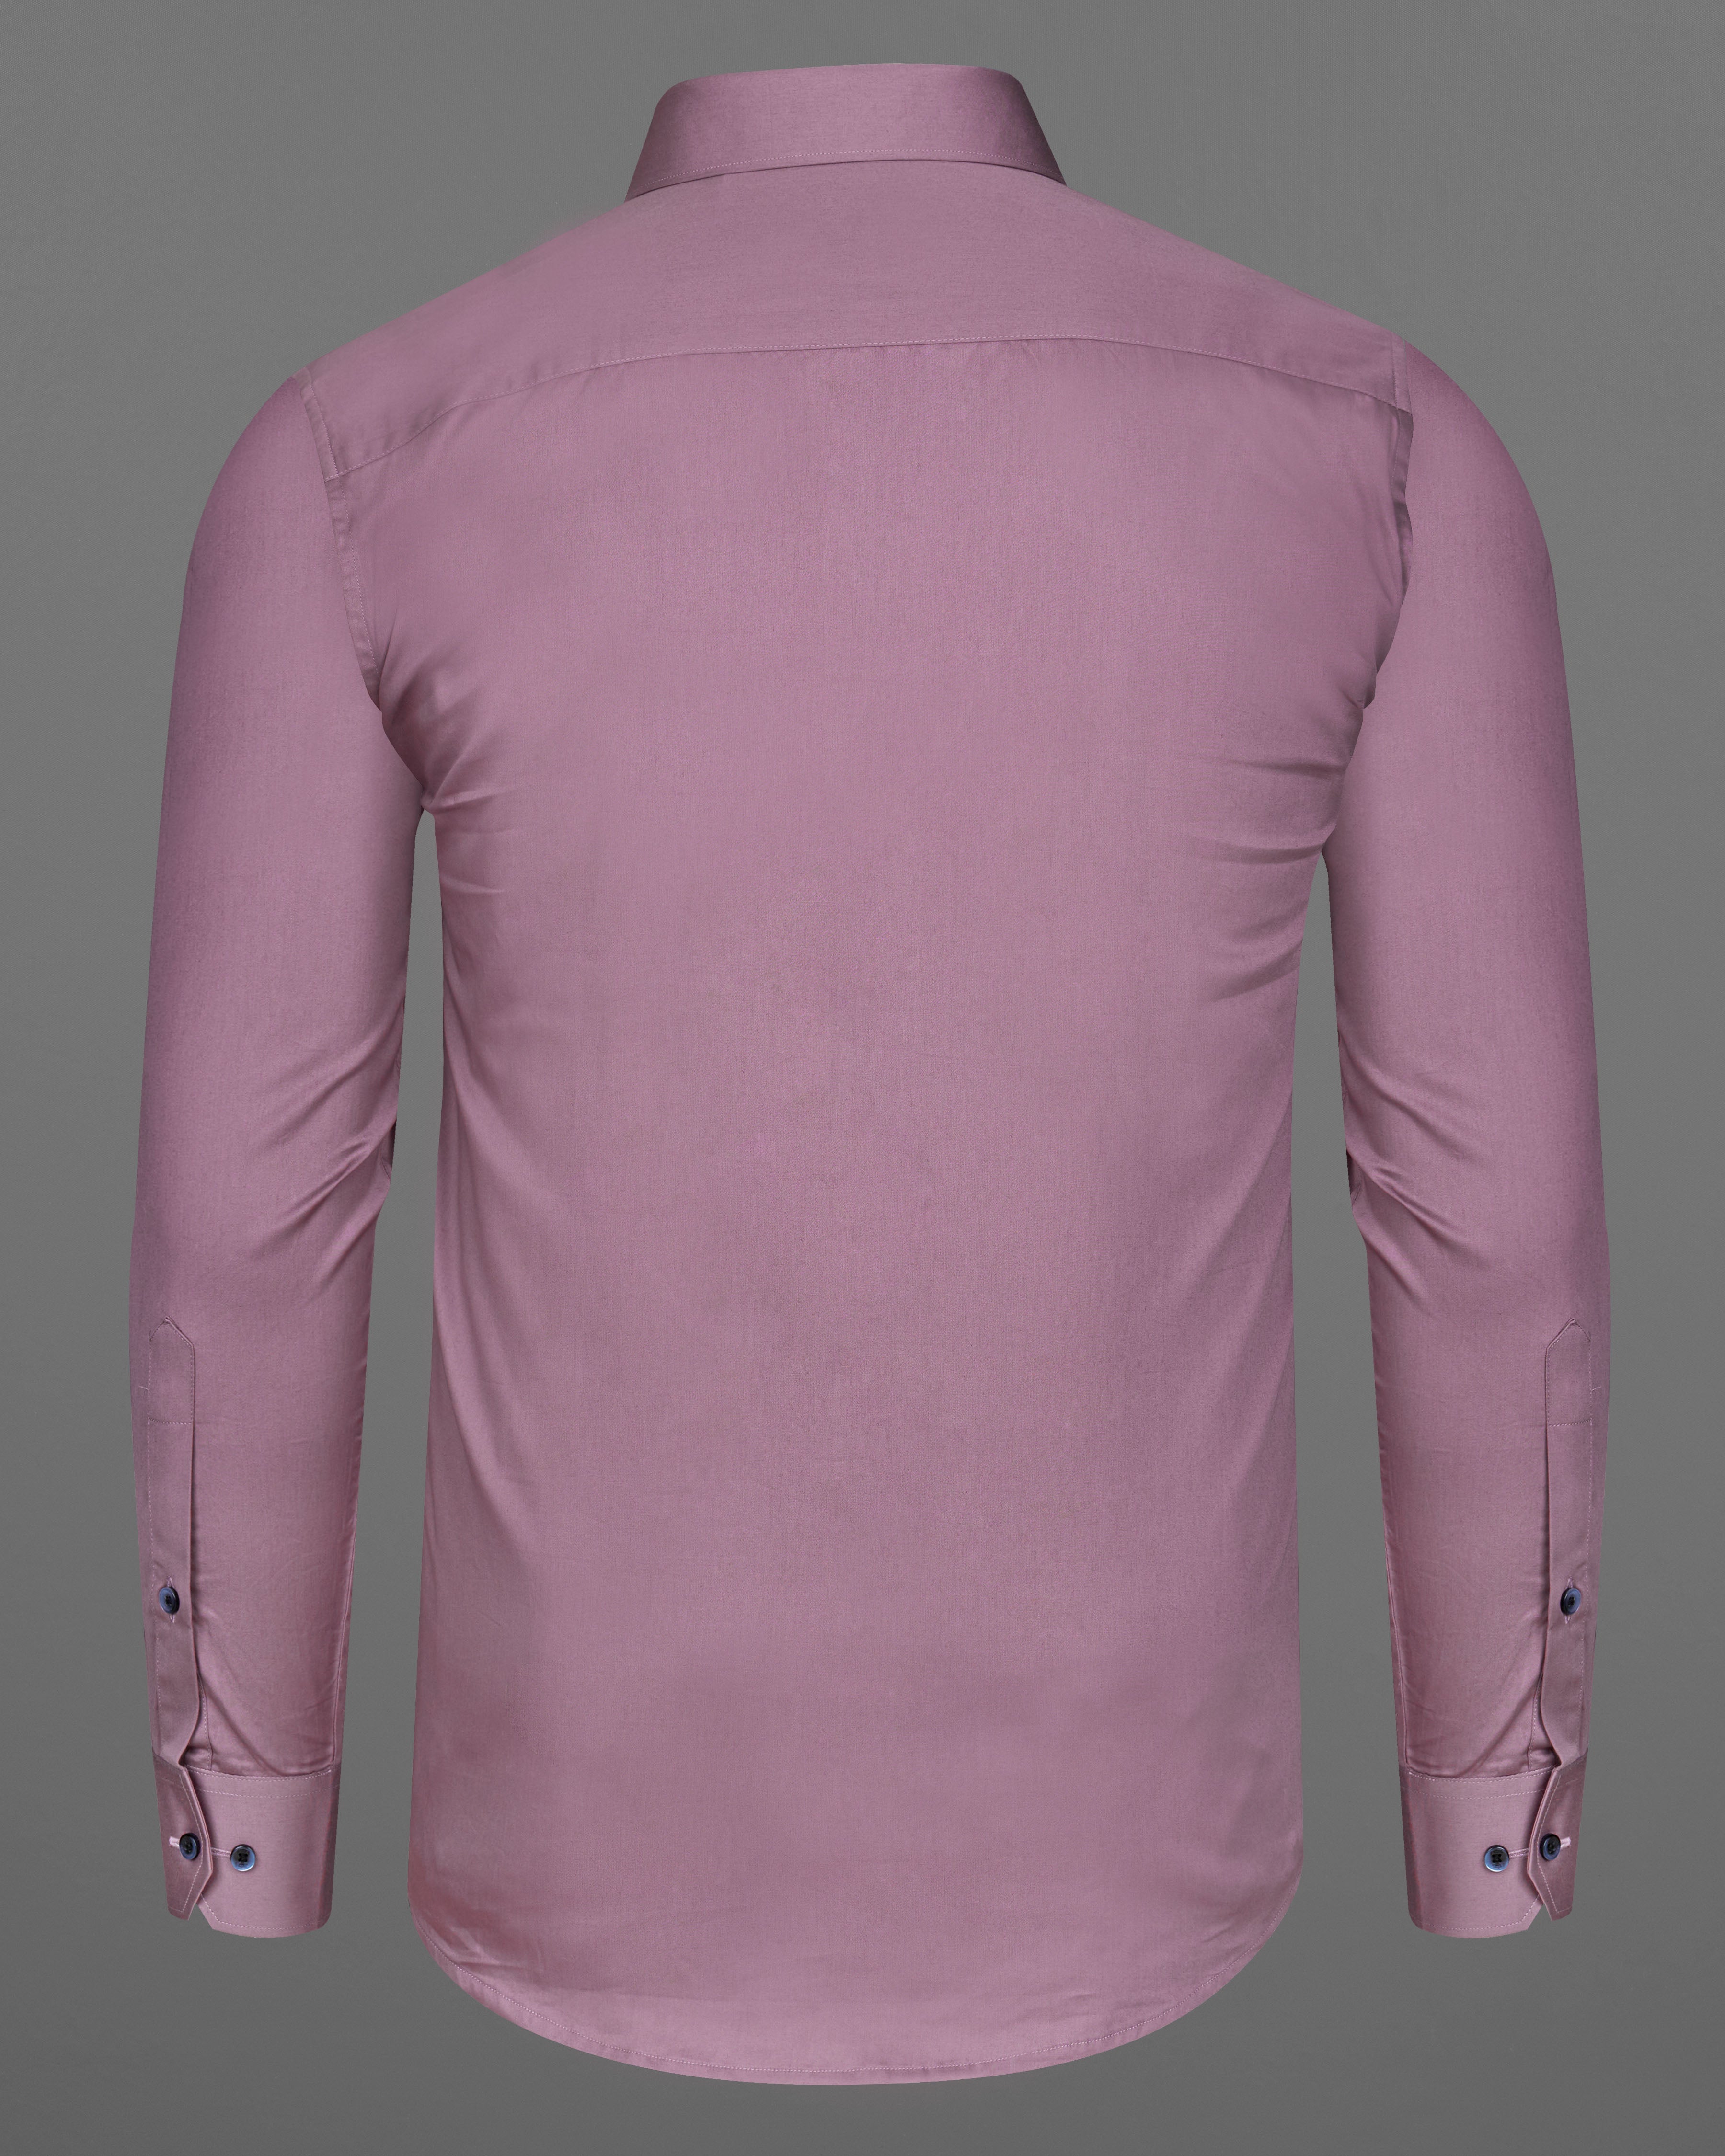 Light Mauve Pink Super Soft Premium Cotton Shirt  9210-BLK-38,9210-BLK-H-38,9210-BLK-39,9210-BLK-H-39,9210-BLK-40,9210-BLK-H-40,9210-BLK-42,9210-BLK-H-42,9210-BLK-44,9210-BLK-H-44,9210-BLK-46,9210-BLK-H-46,9210-BLK-48,9210-BLK-H-48,9210-BLK-50,9210-BLK-H-50,9210-BLK-52,9210-BLK-H-52